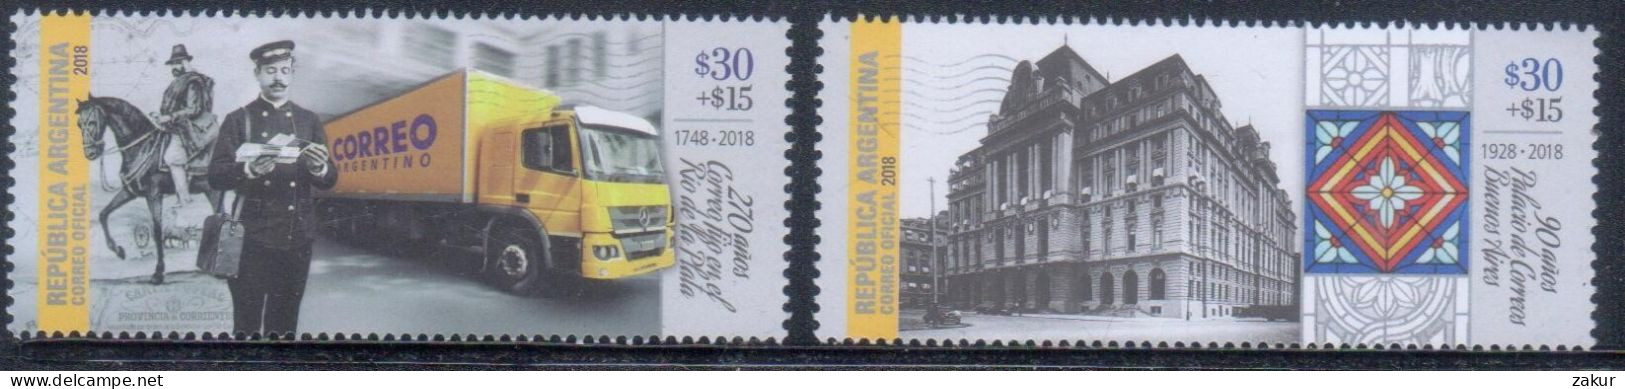 Argentina 2018 - Filatelia Argentina - Unused Stamps